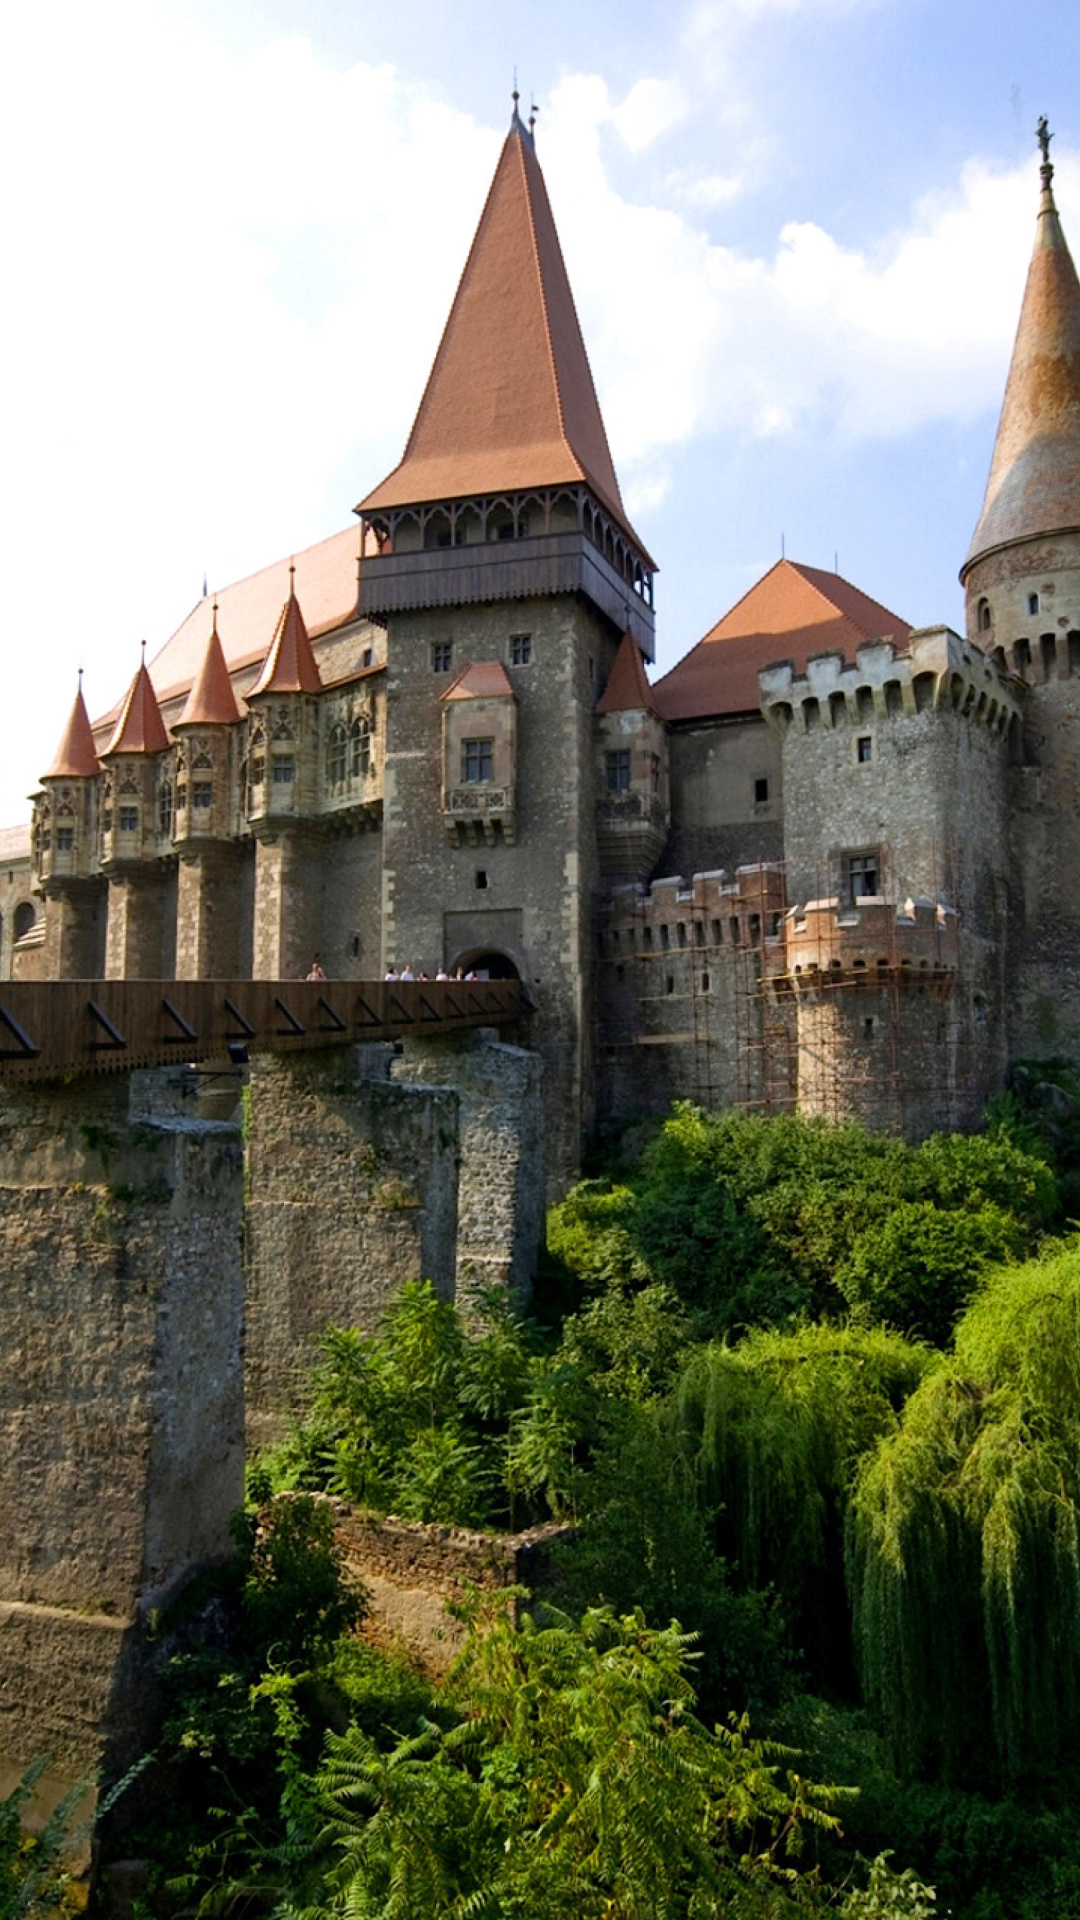 Das Corvin Castle in Romania, Transylvania Wallpaper 1080x1920